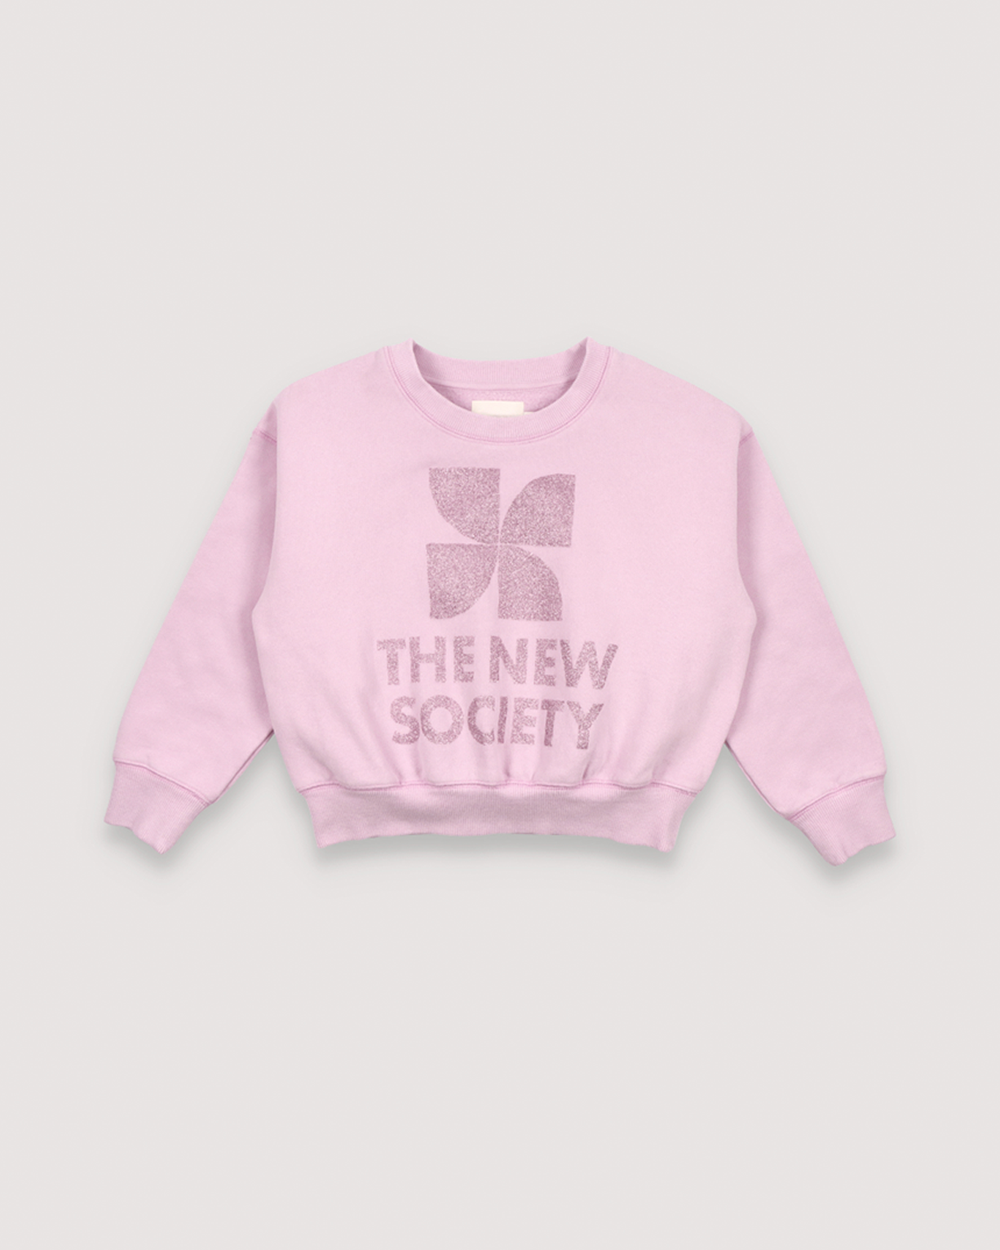 [THE NEW SOCIETY] Ontario Sweater Iris Lilac [4Y, 8Y, 10Y]